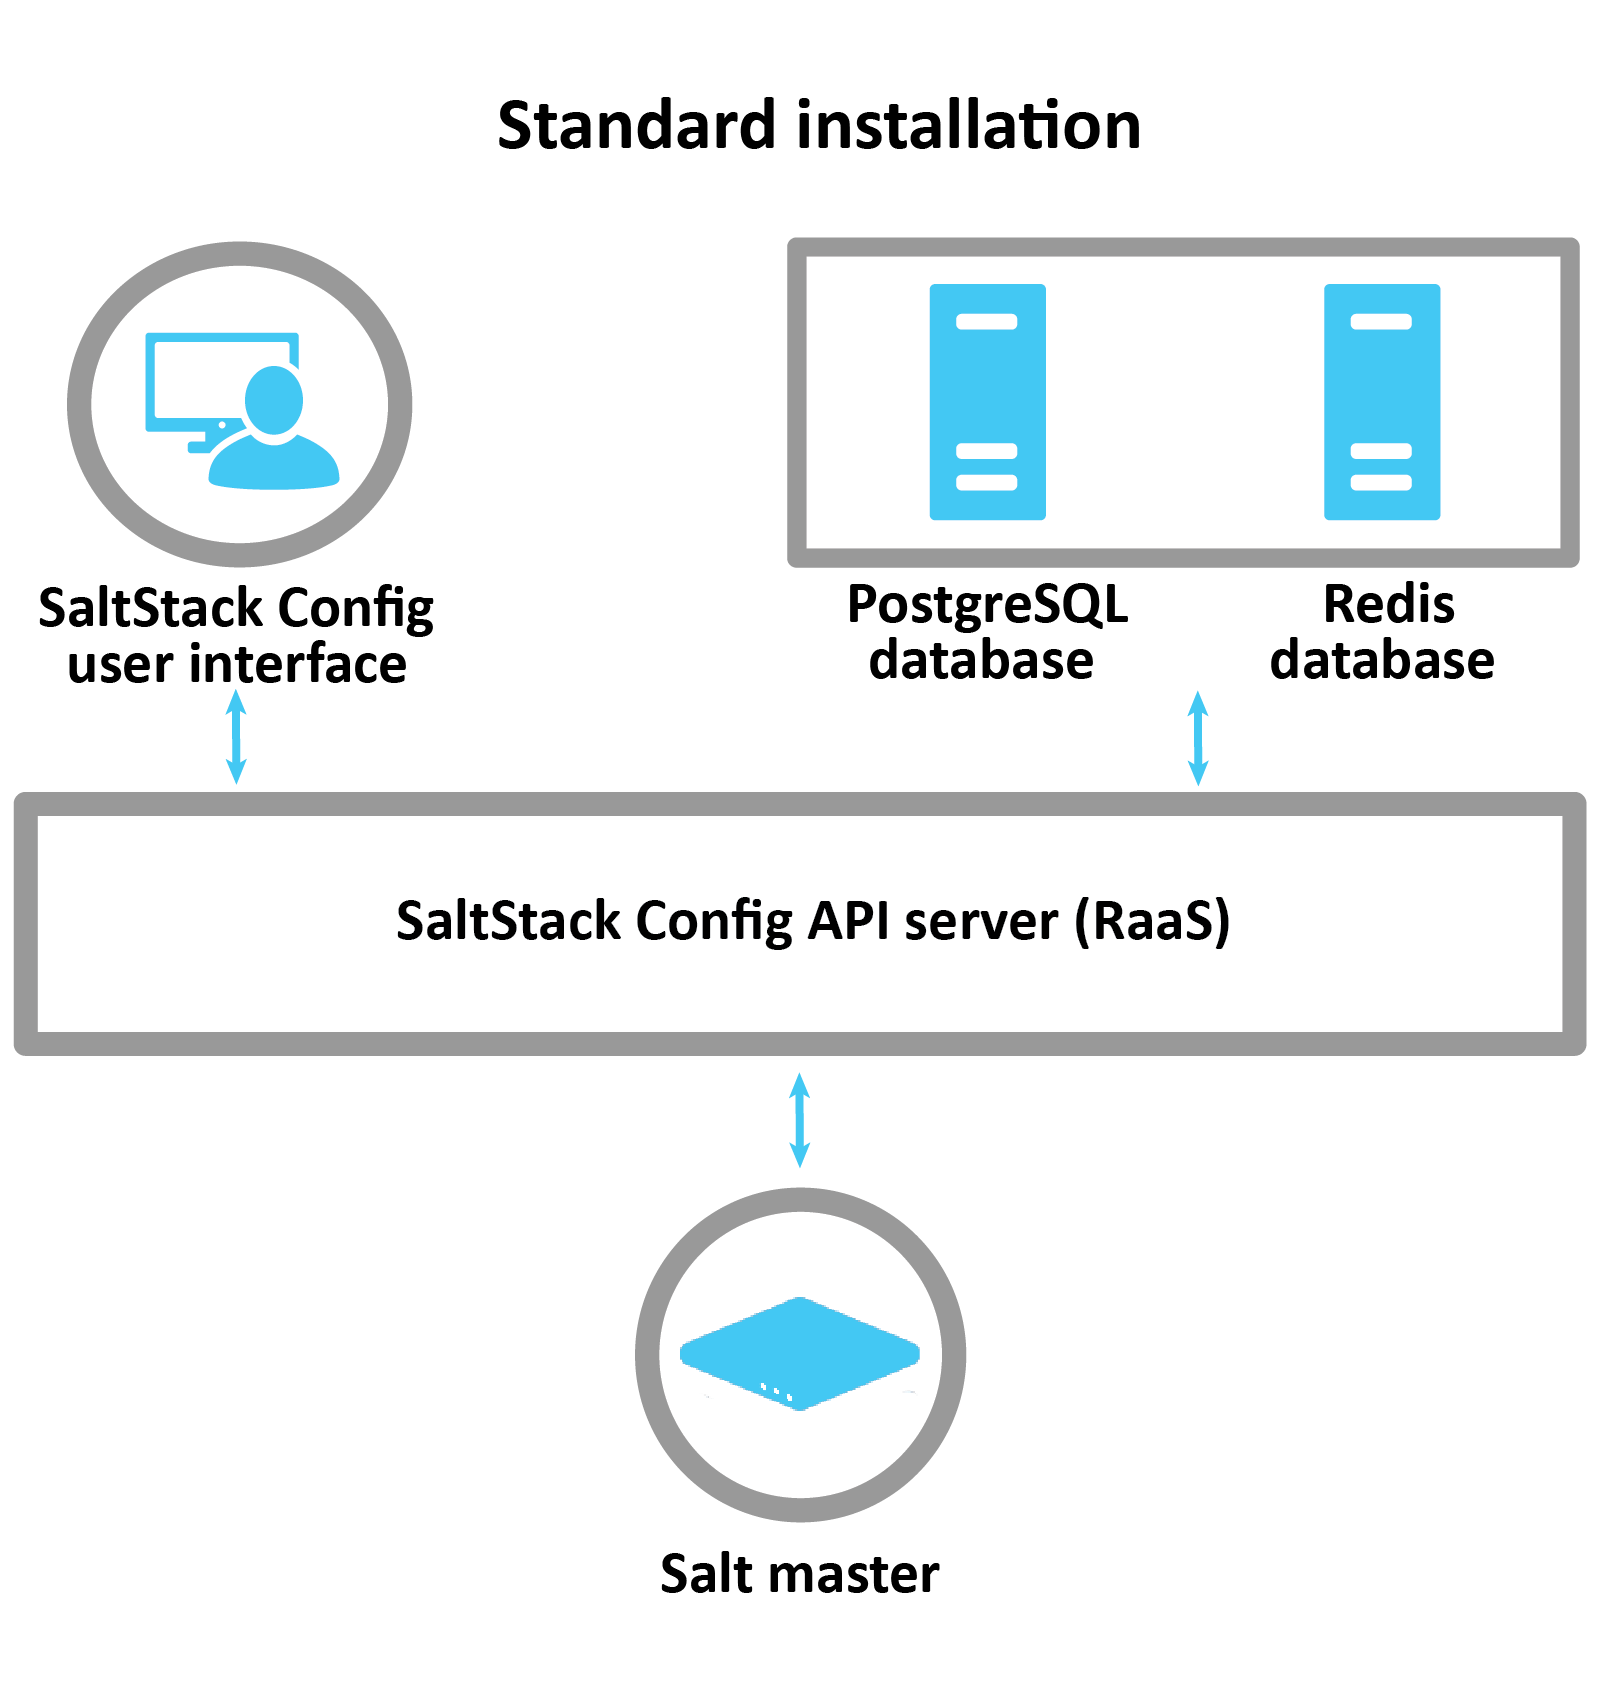 Diagramme expliquant une installation standard : l'interface utilisateur de SaltStack Config, et les bases de données Postgres et Redis communiquent avec le serveur RaaS qui configure et contrôle le master Salt.